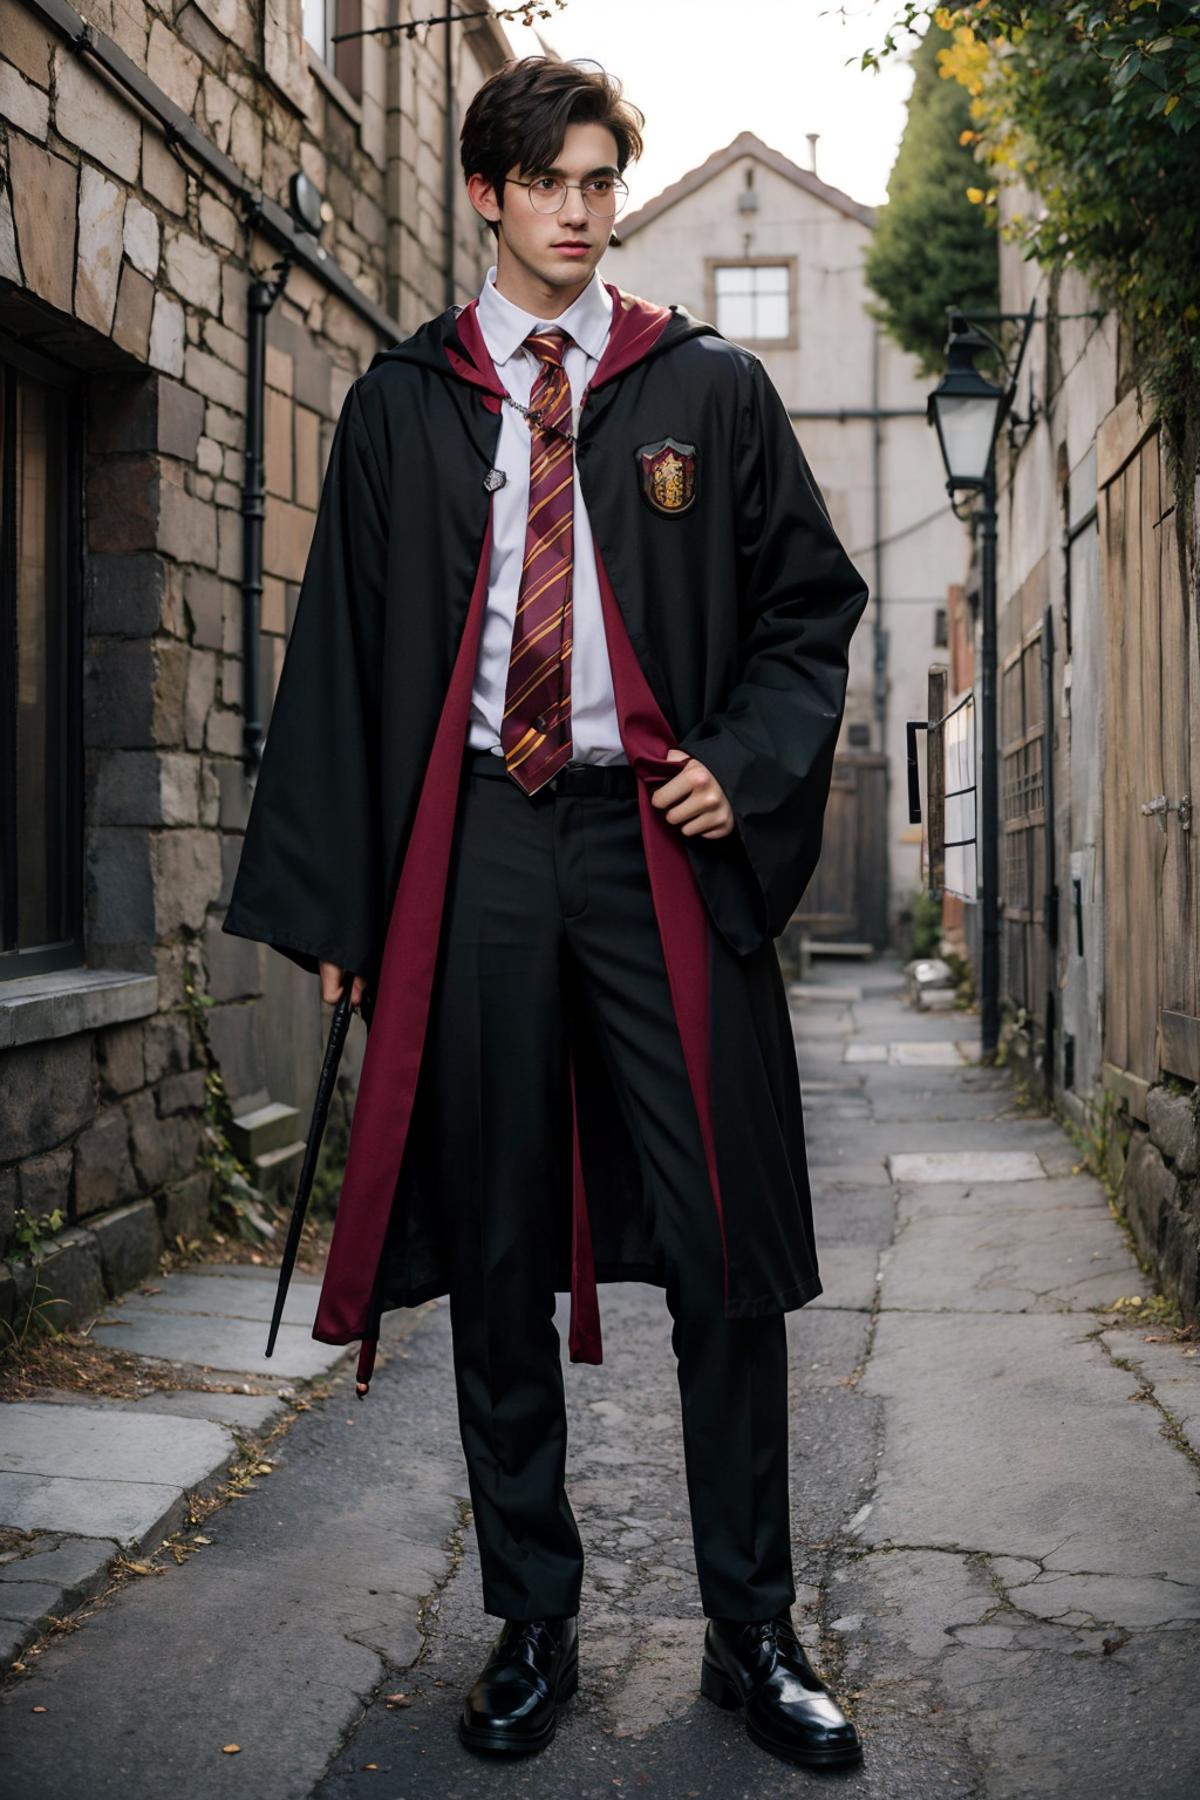 [Y5] Hogwarts school uniform 霍格沃兹校服 image by Y5targazer